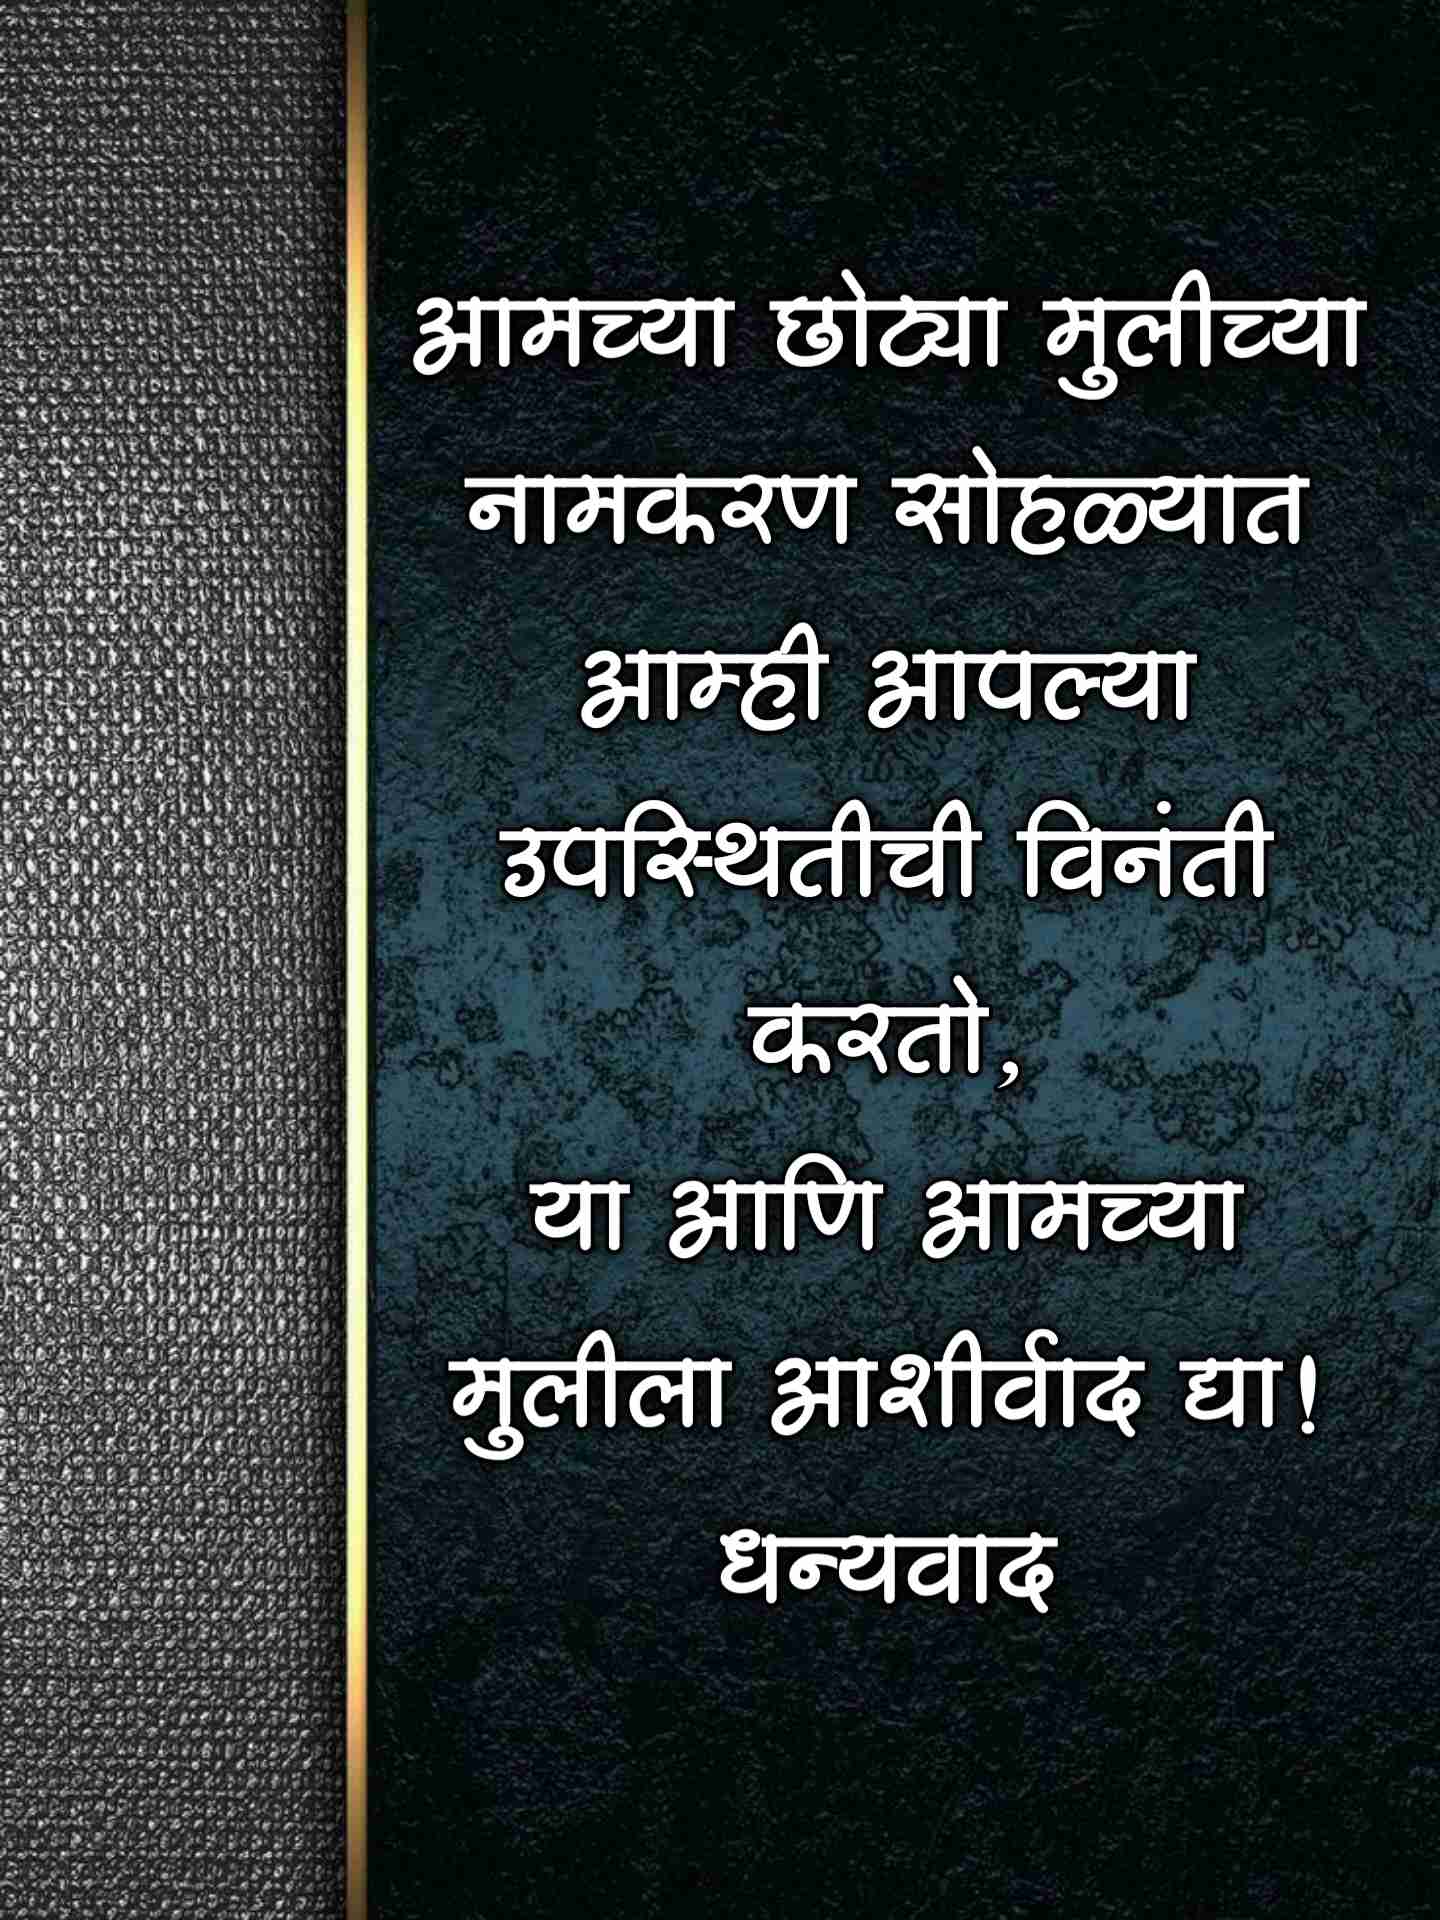 Namkaran Sohala Invitation Card Marathi 9 -